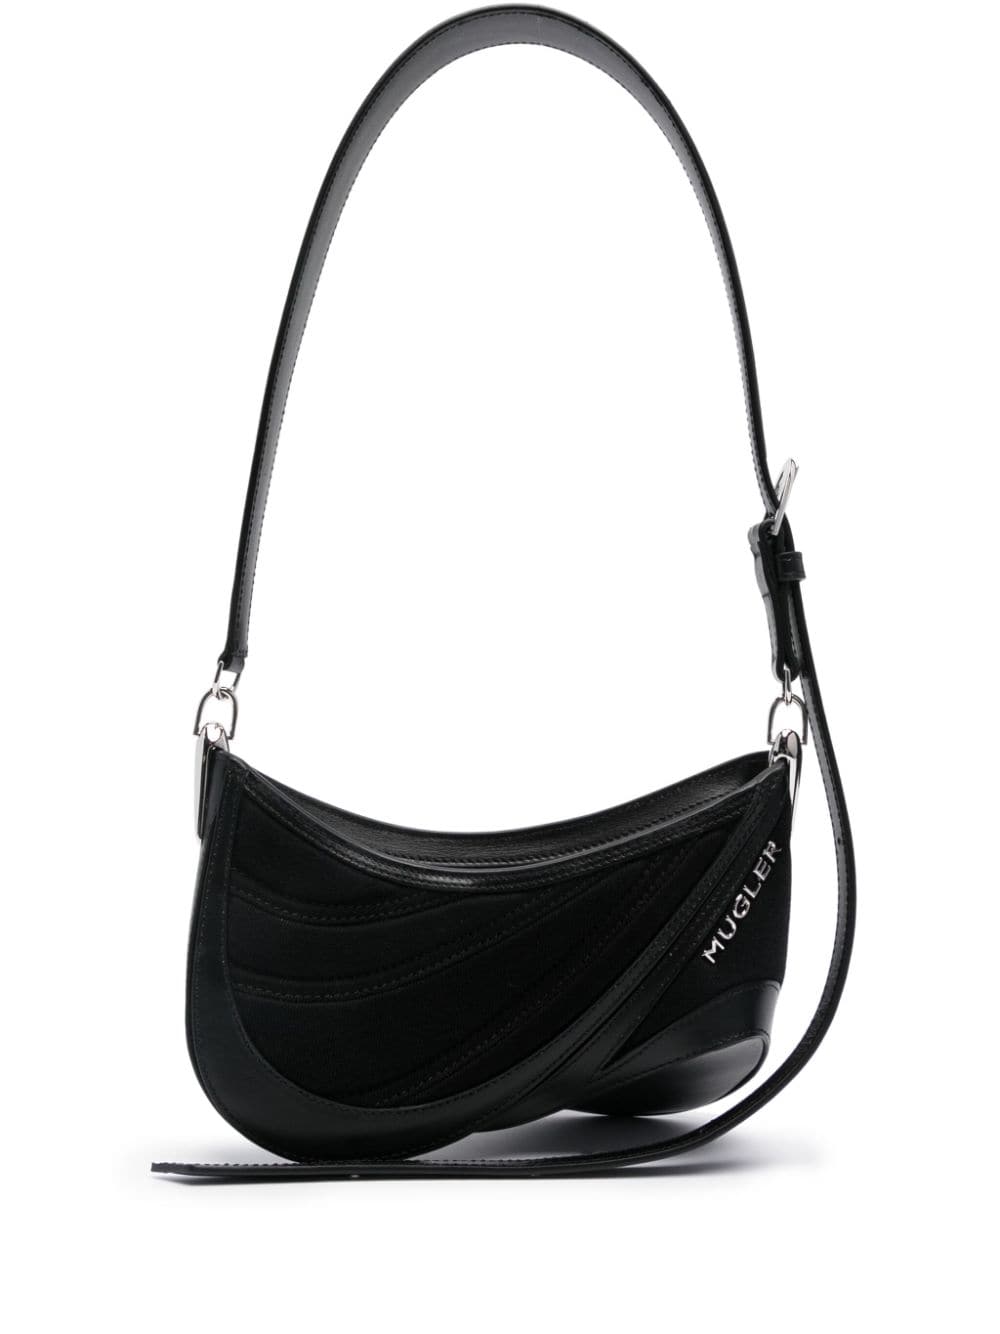 Spiral Curve 01 Shoulder Handbag - Women's Black Leather Bag